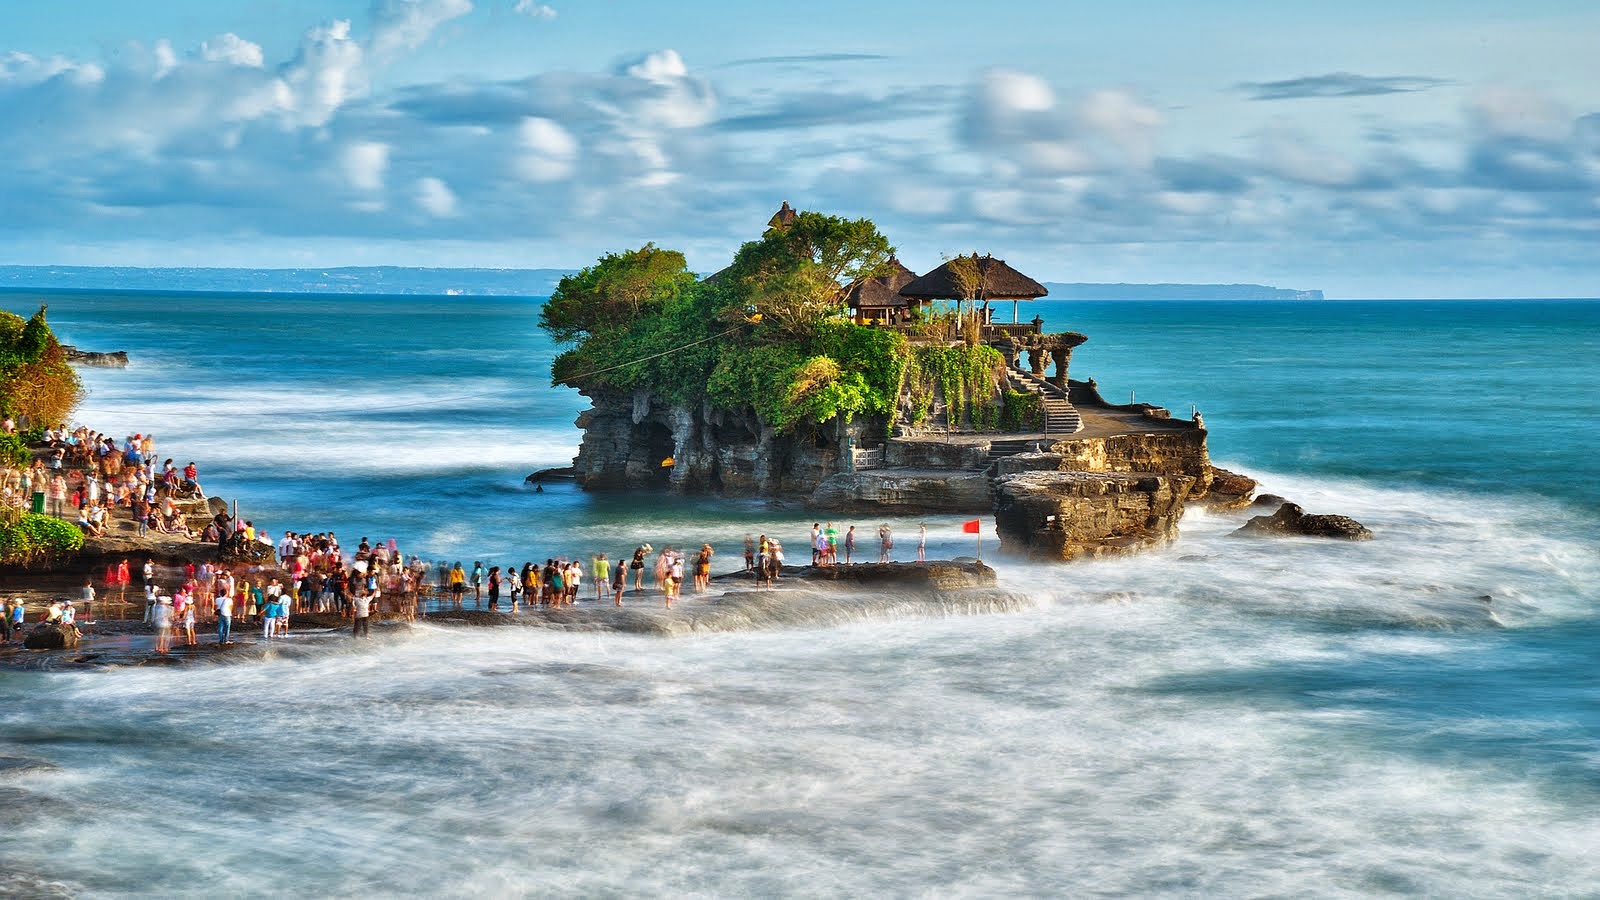 Tempat Wisata Di Bali Yang Menarik Sorot Indonesia